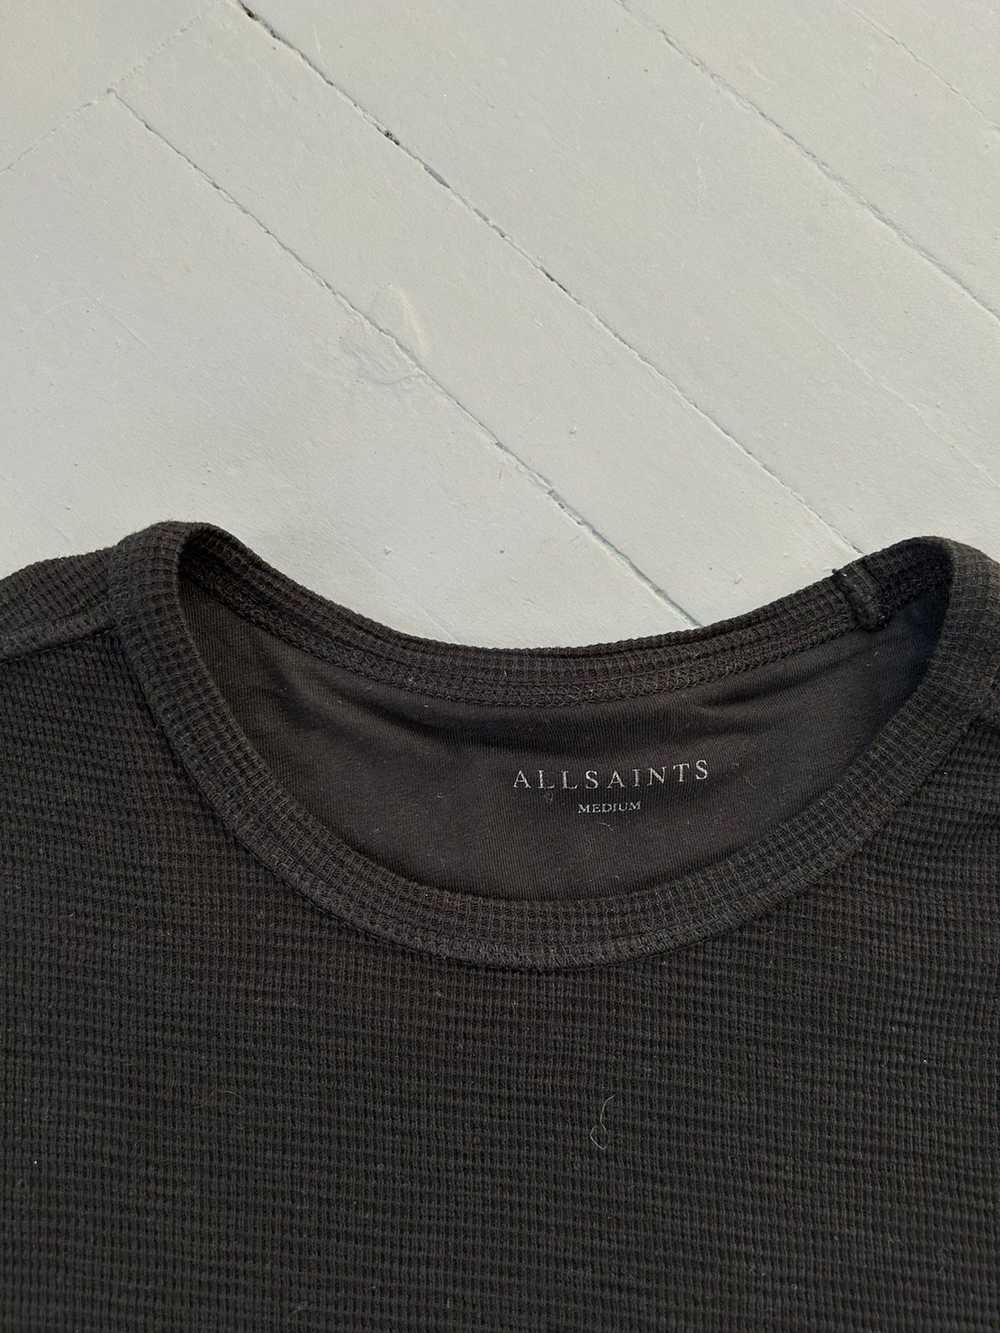 Allsaints All Saints long sleeve shirt - image 5